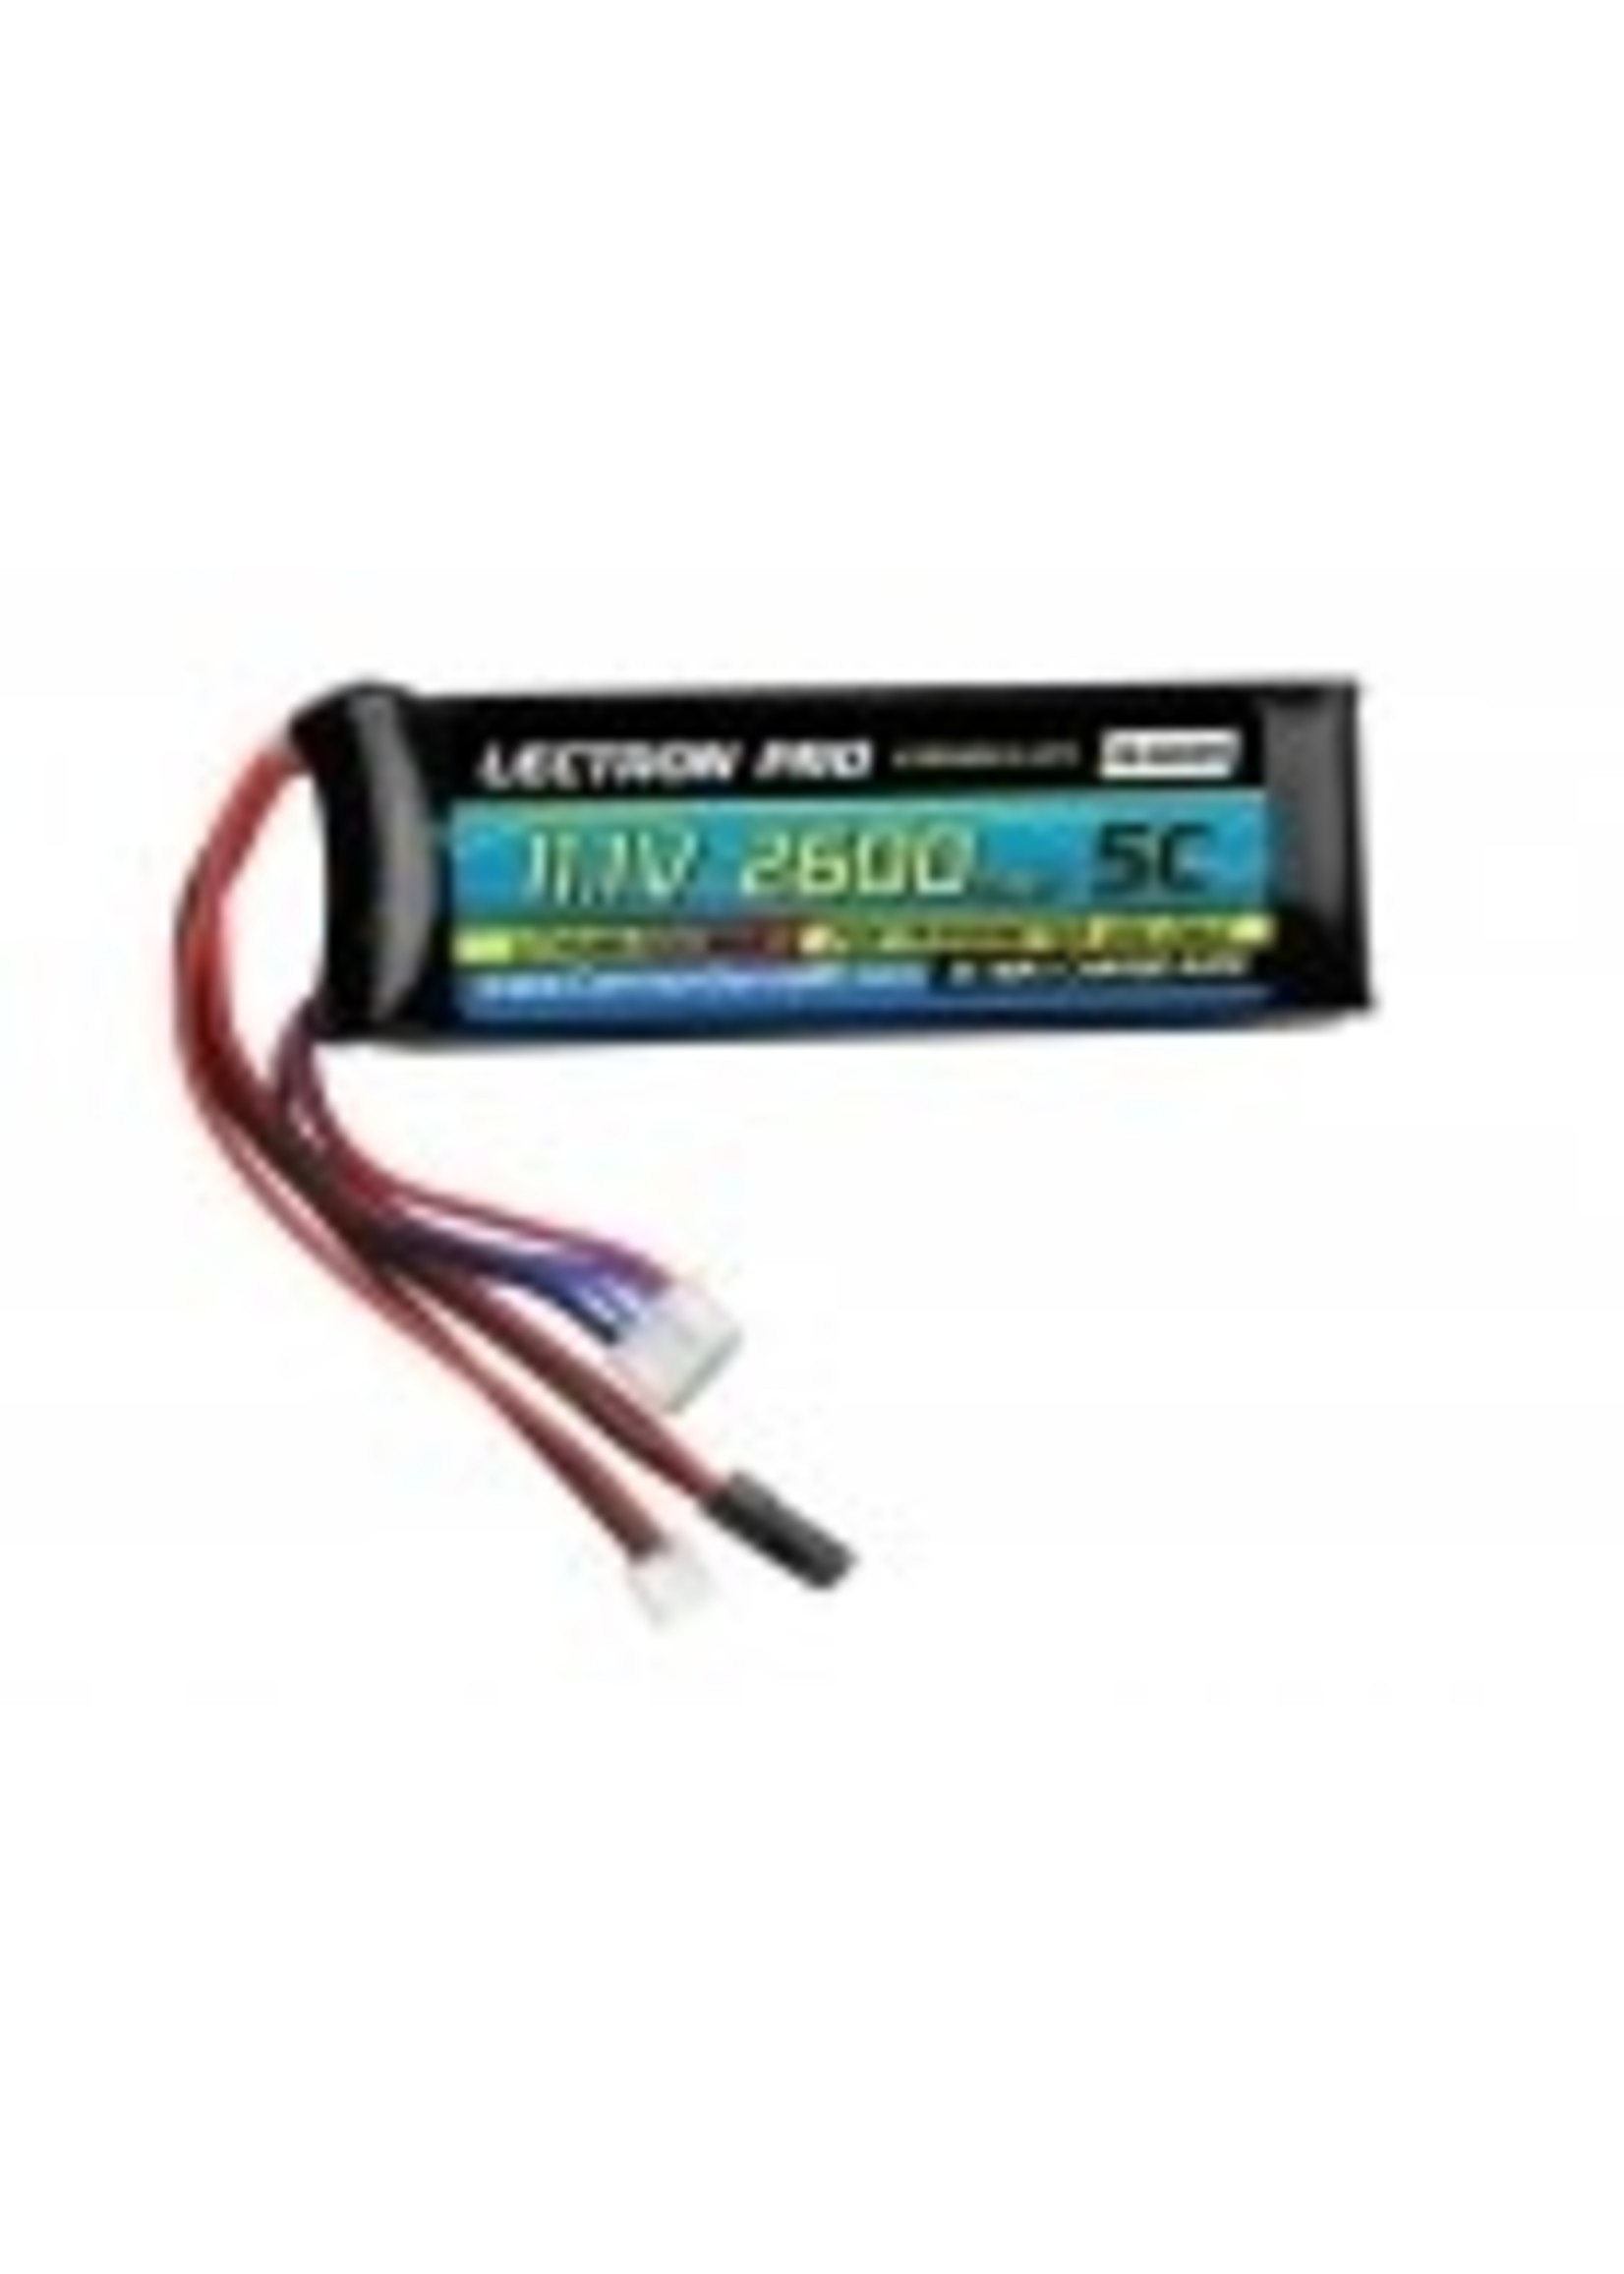 Common sense rc 3S2600-5-LTX Lectron Pro Transmitter Battery Pack - 11.1V 2600mah for TX-Futaba, Hi-Tec, Airtronics, JR, & Spektrum DX7